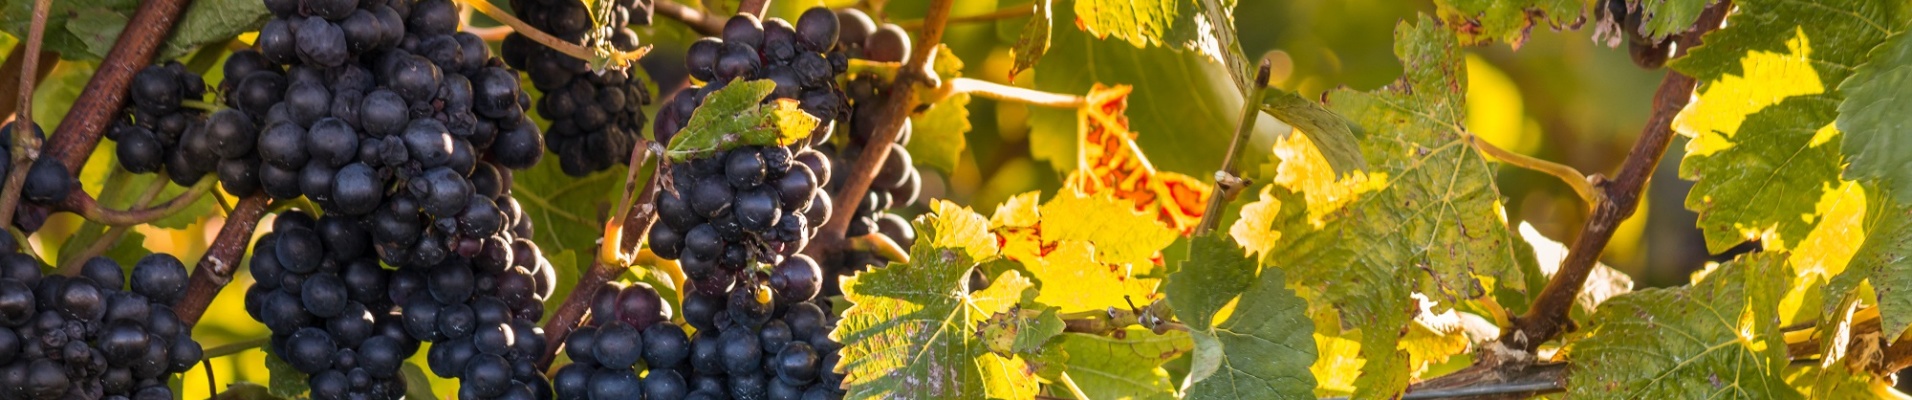 vignes de pinot noir en nouvelle zelande à l'automne